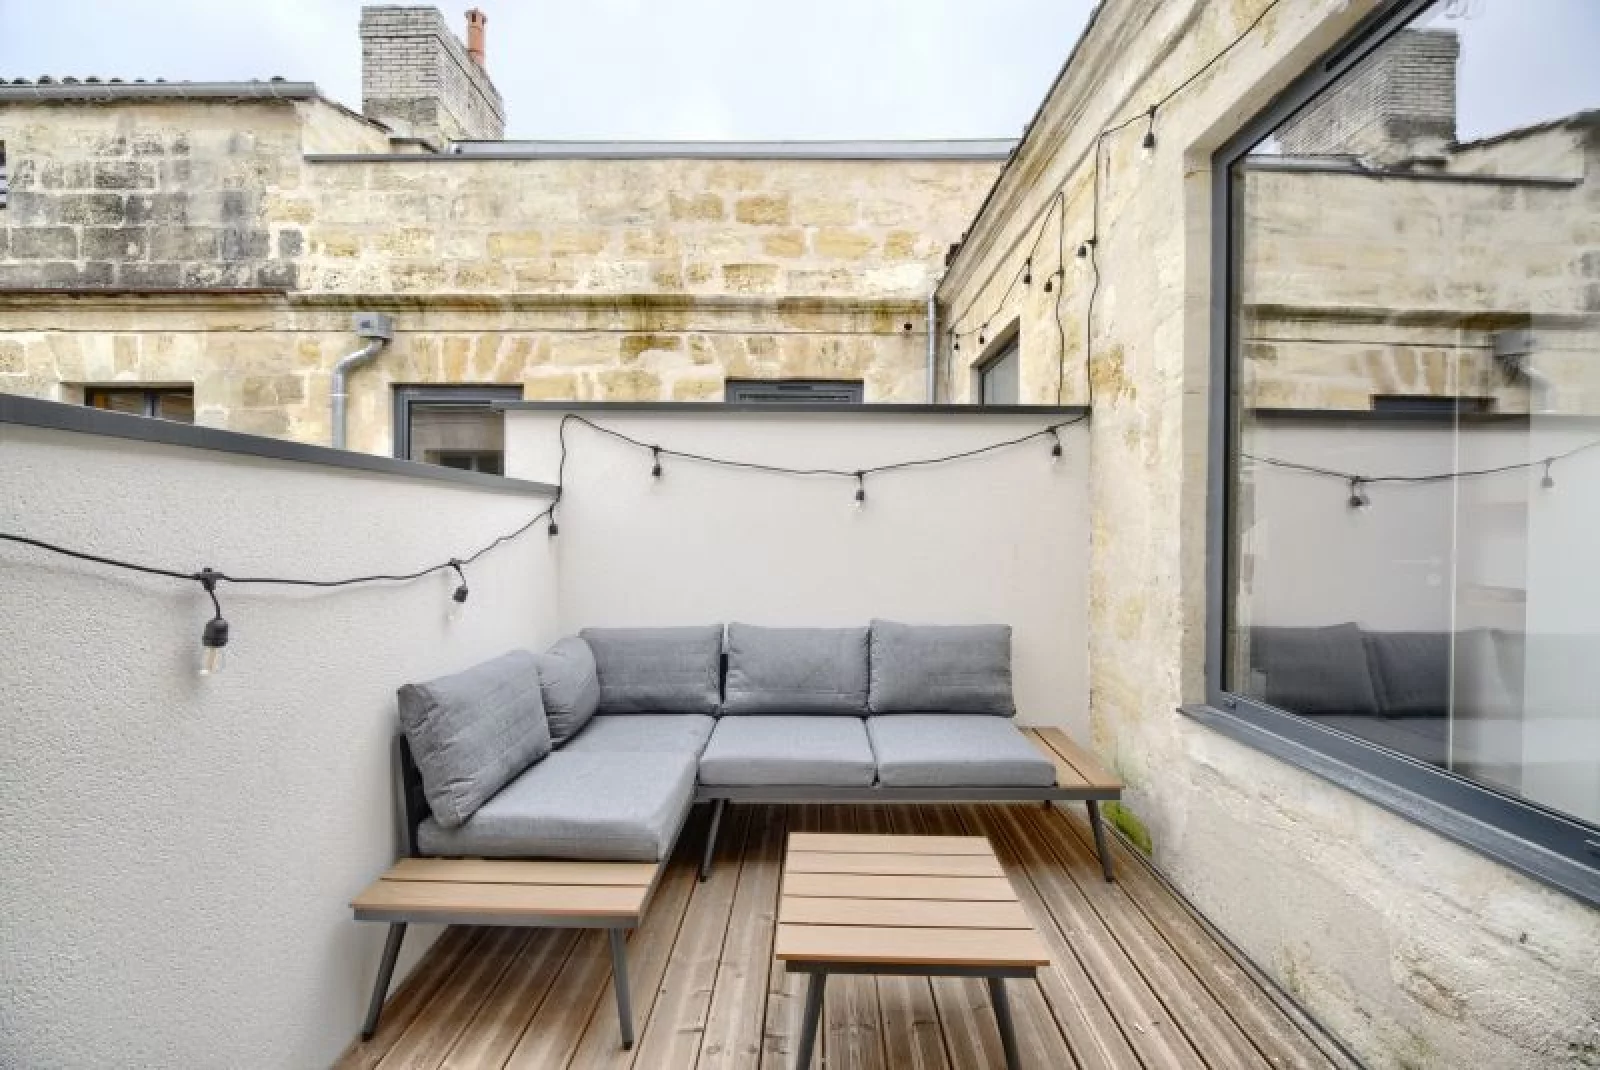 Location appartement 2 pièces meublé 48m² (Bordeaux - Chartrons)